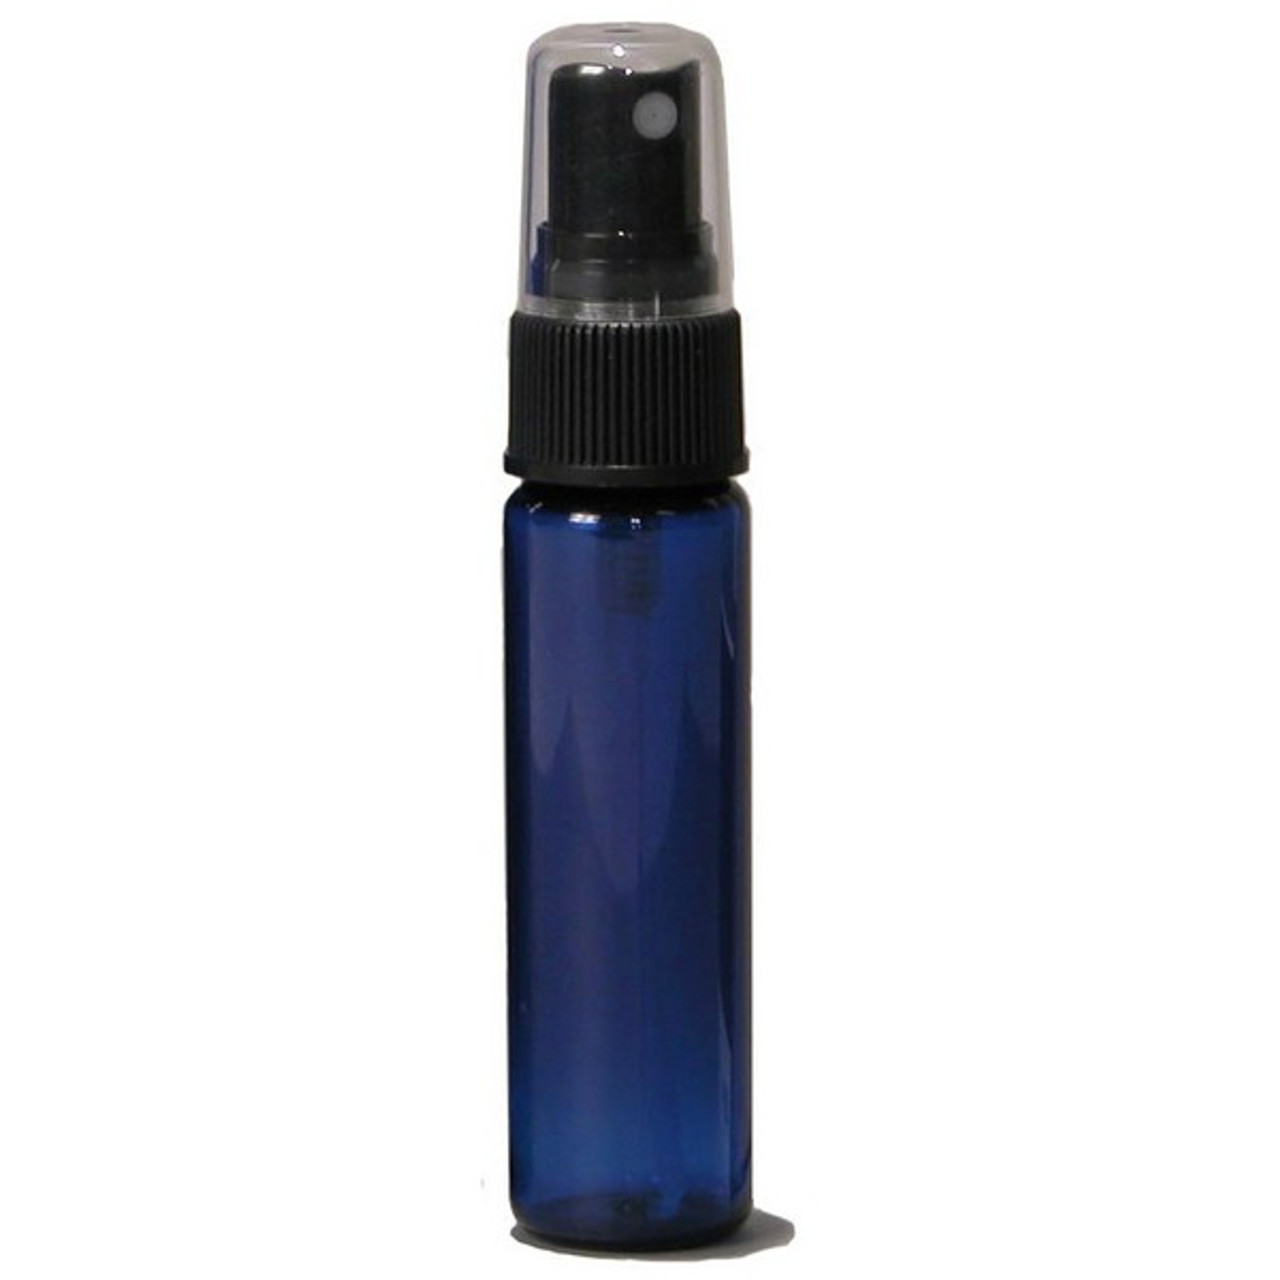 Clear Cylinder Spray Bottles Bulk Pack - 2 oz